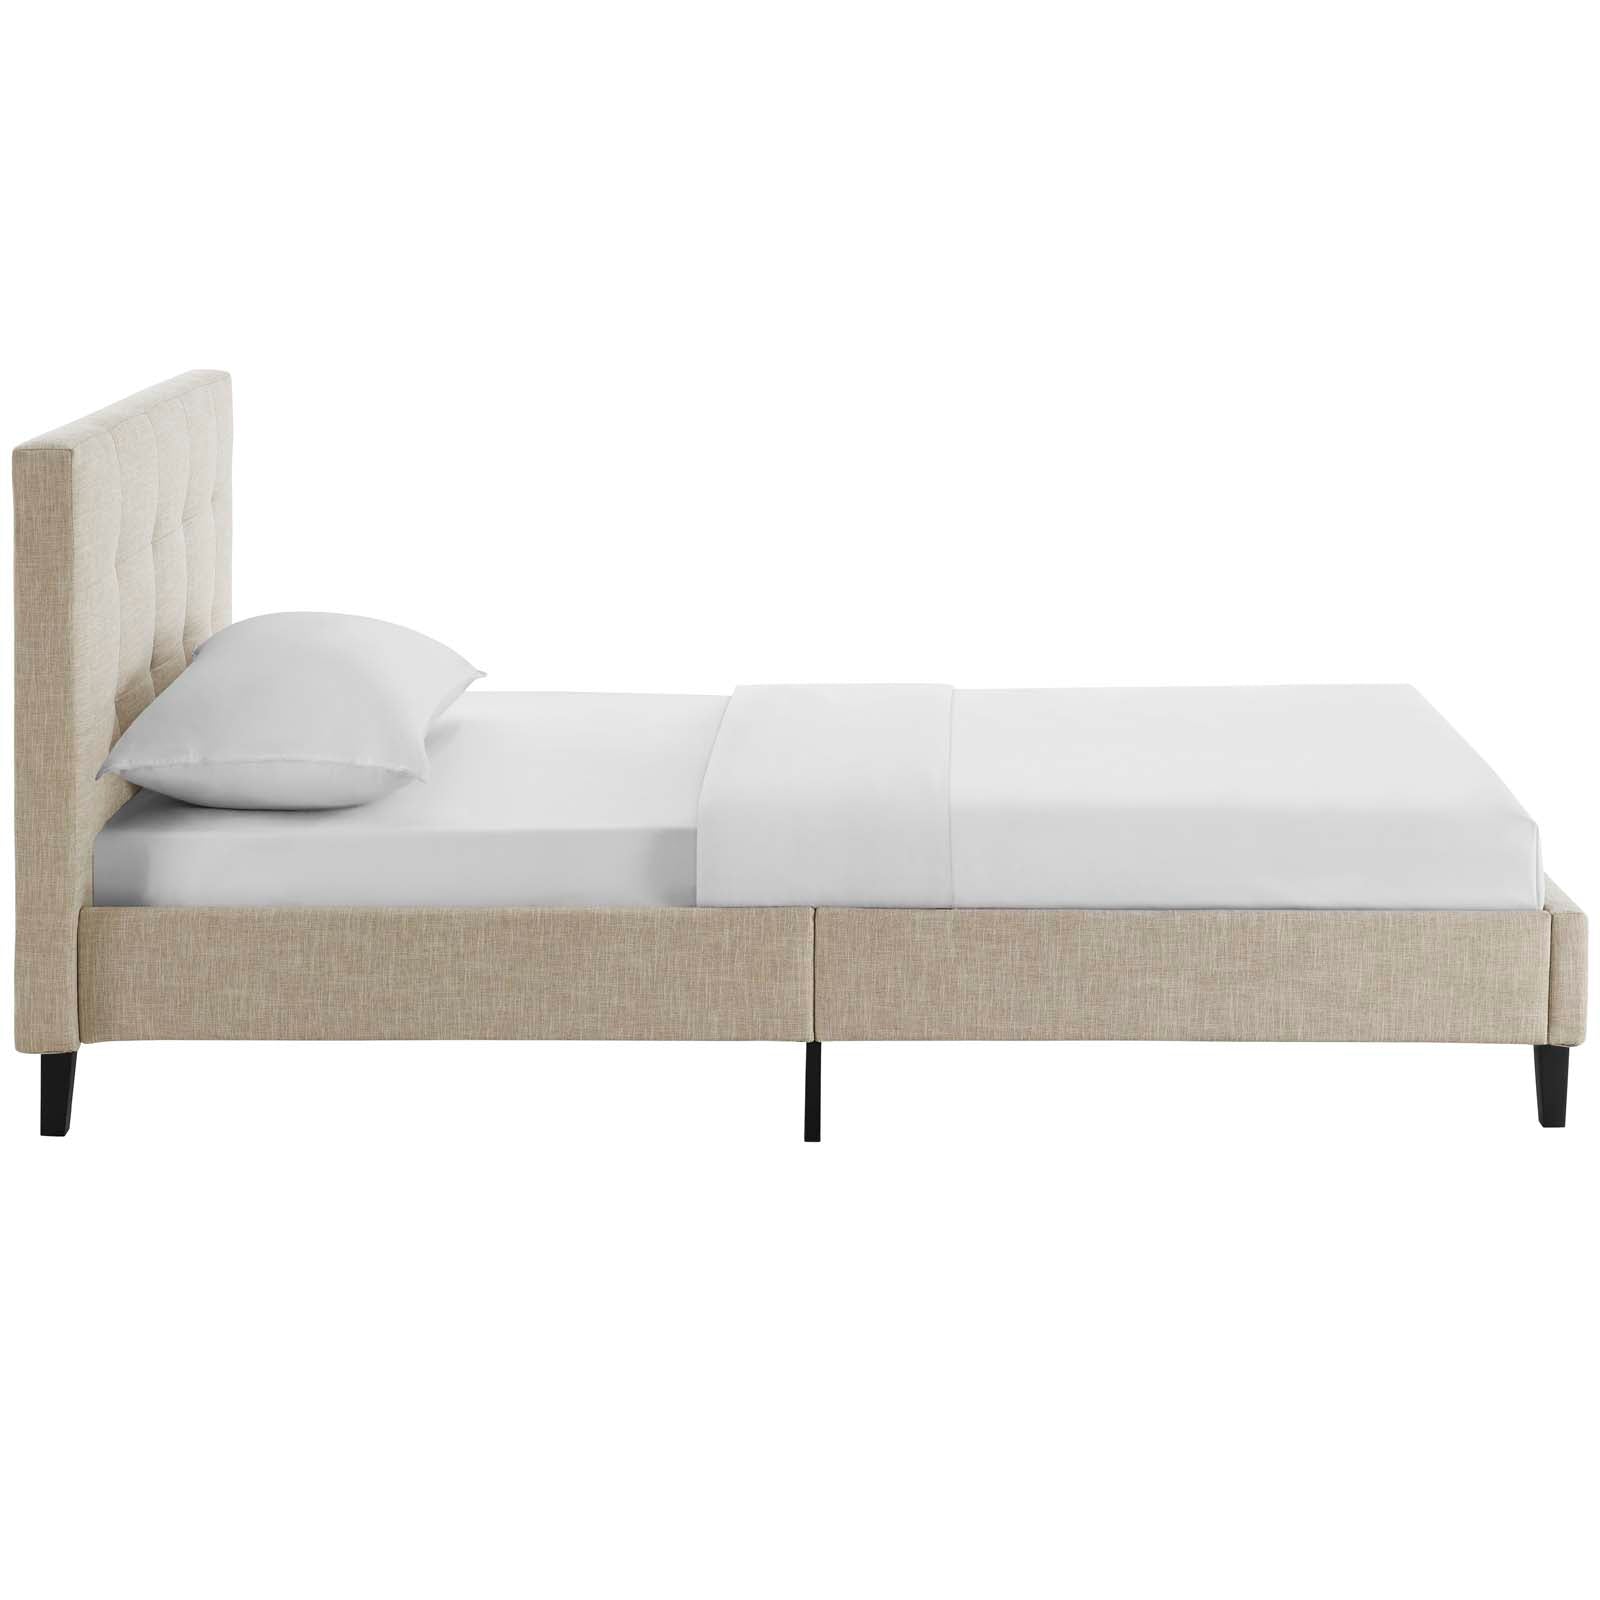 Modway Beds - Linnea Twin Bed Beige